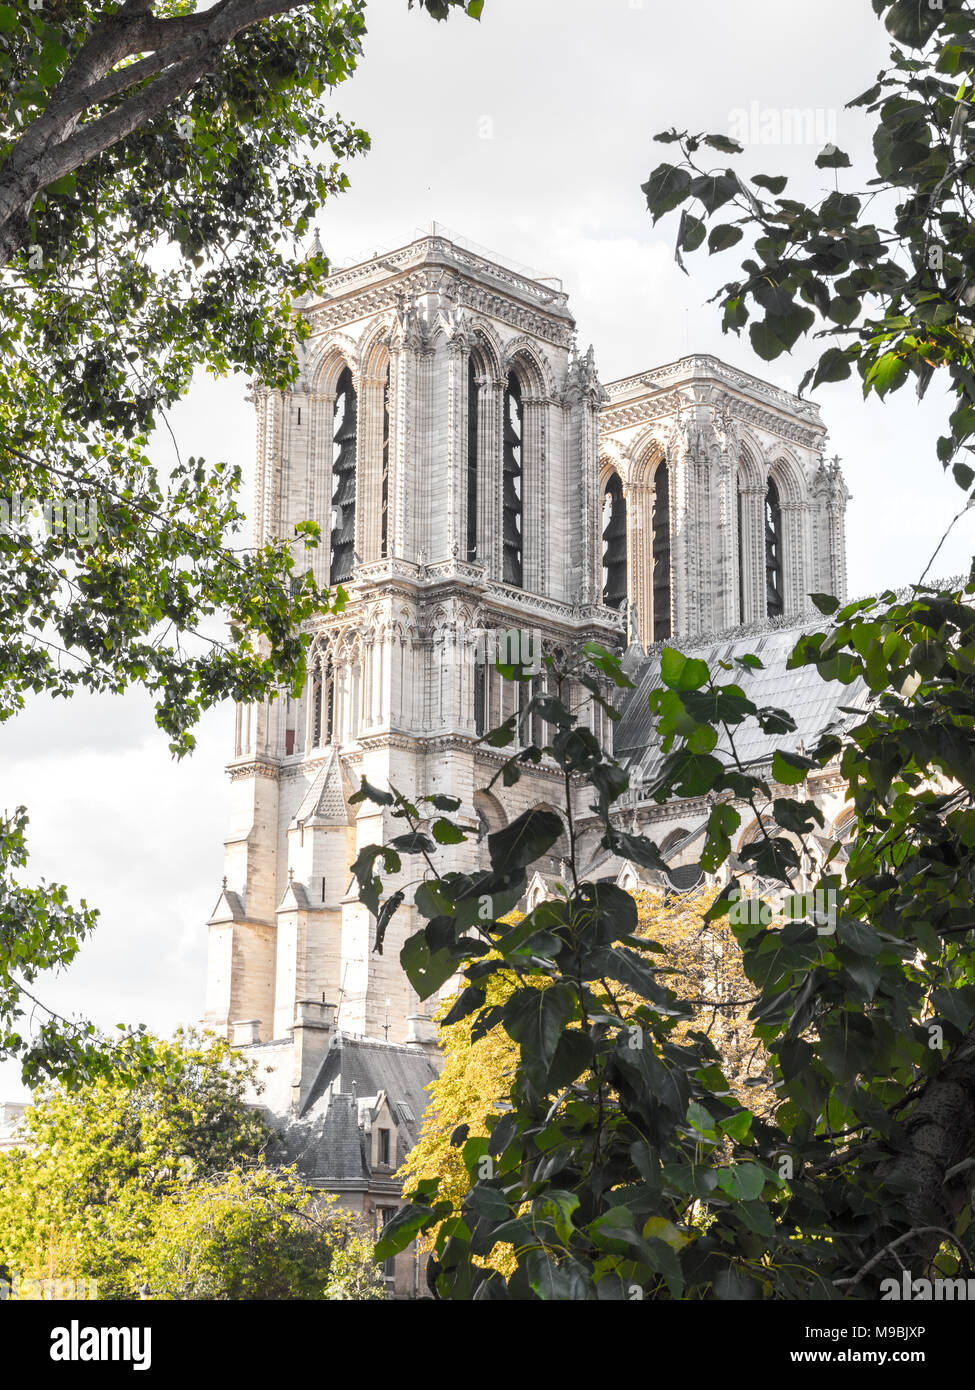 Bellissimo viaggio turistico fotografia della famosa in tutto il mondo e la storica cattedrale di Notre Dame Cattedrale Cattolica di Parigi Francia incorniciato dal verde lussureggiante dei rami dell'albero. Foto Stock